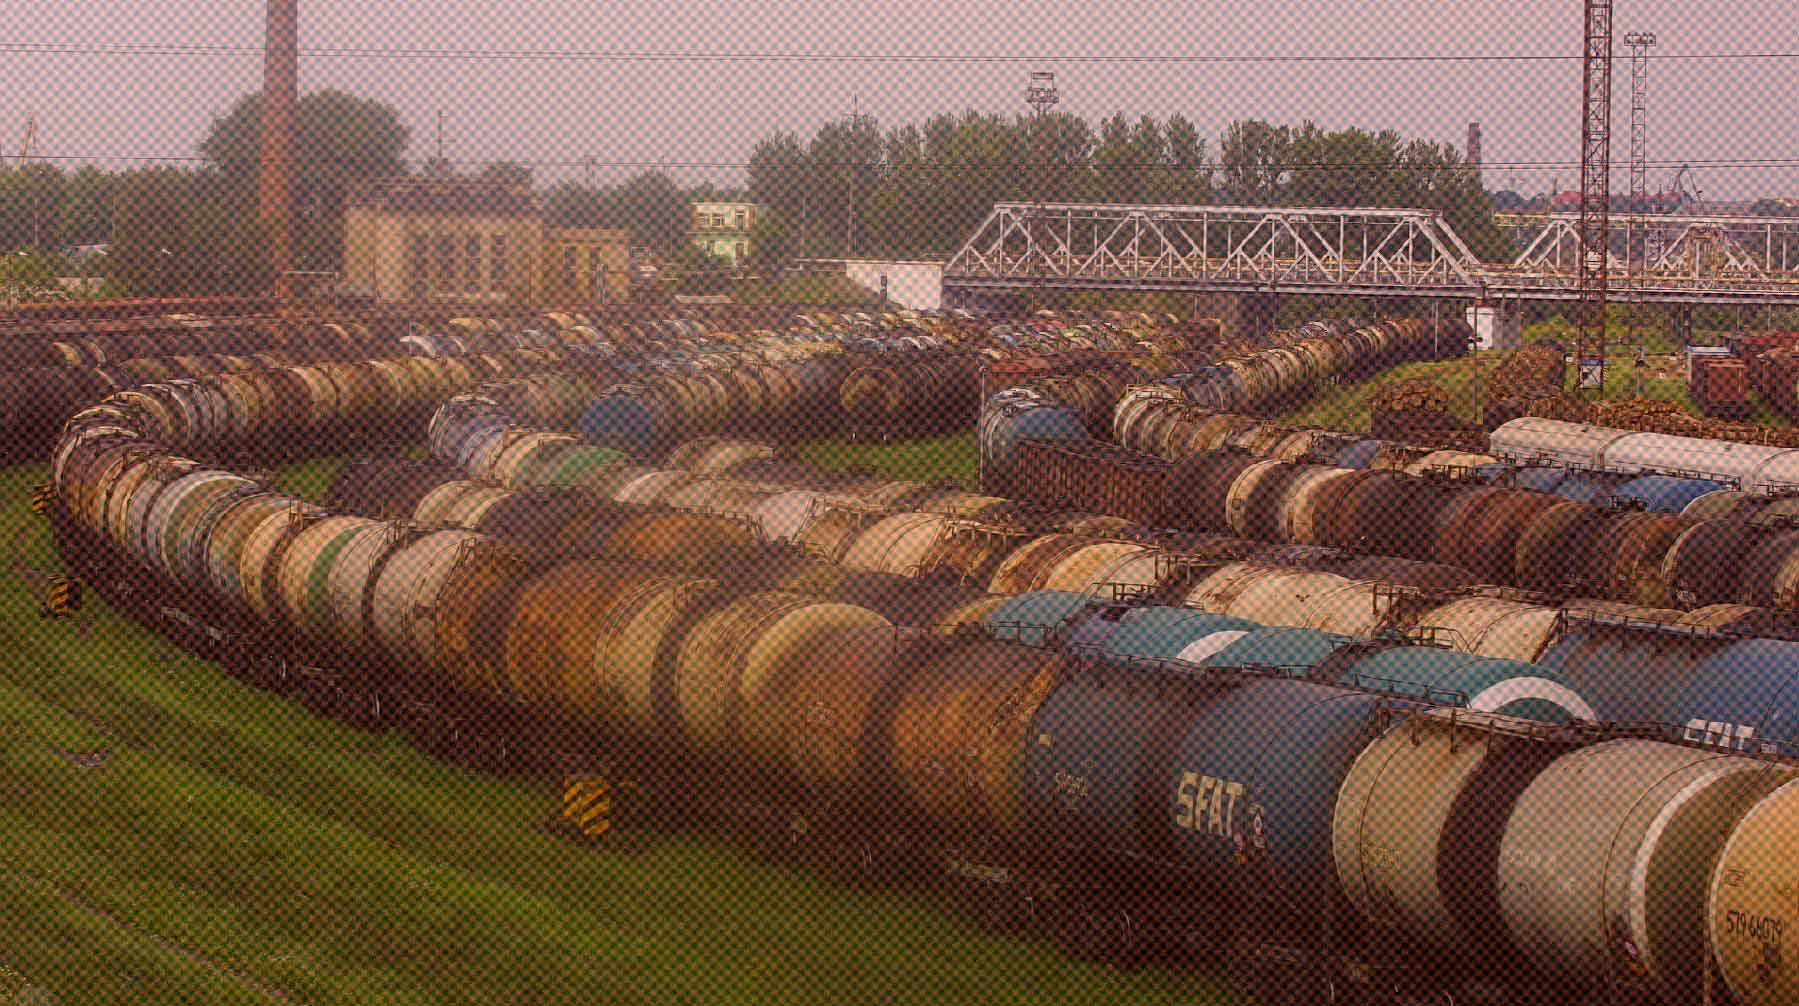 Dailystorm - Нефтепродукты, икра, спирт: названы товары, запрещенные для перевозки в Калининград через Литву